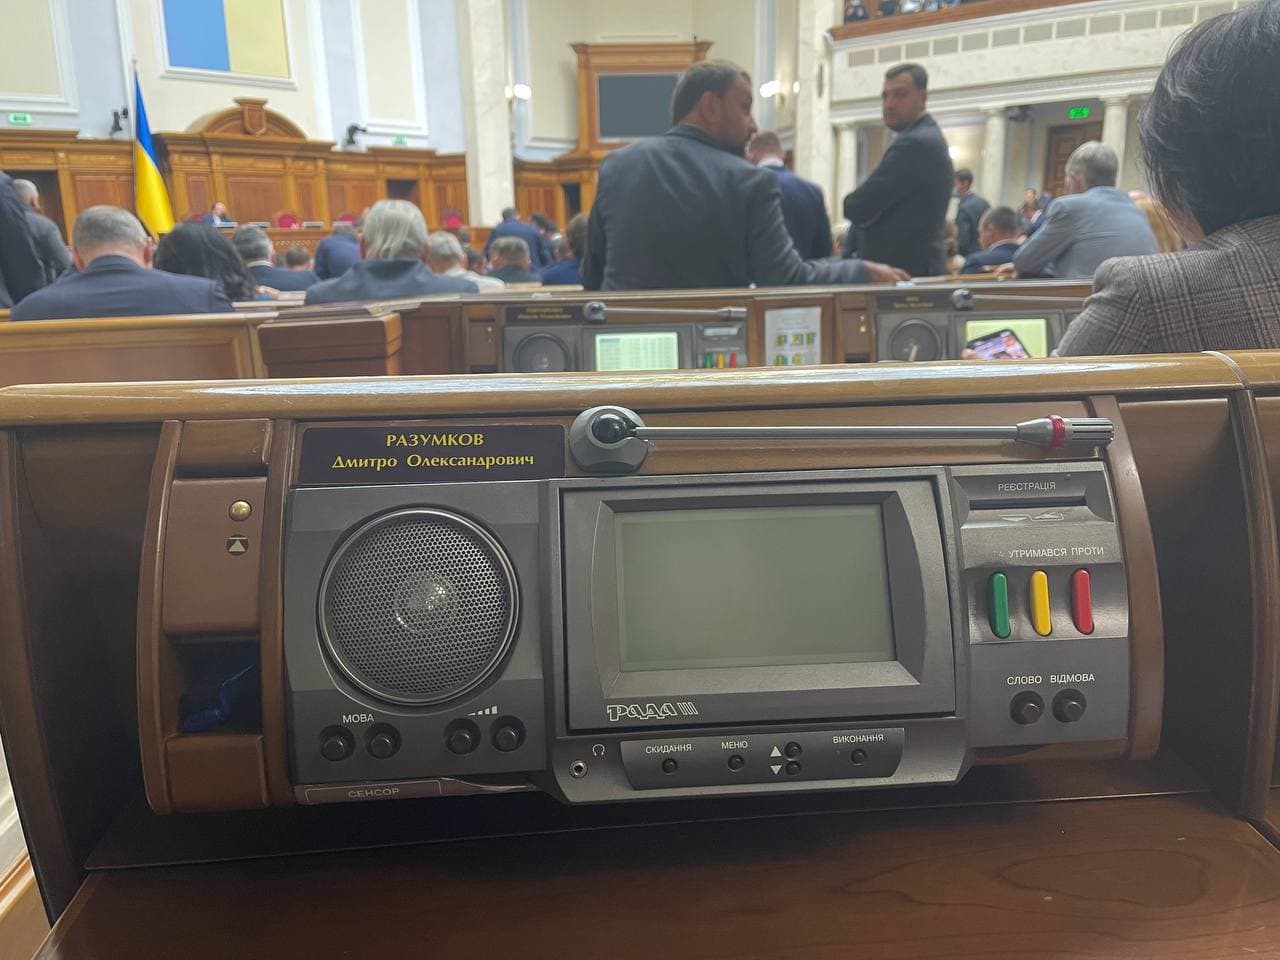 Рада взяла паузу в спикериаде - что происходило в парламенте, фото - А.Гончаренко